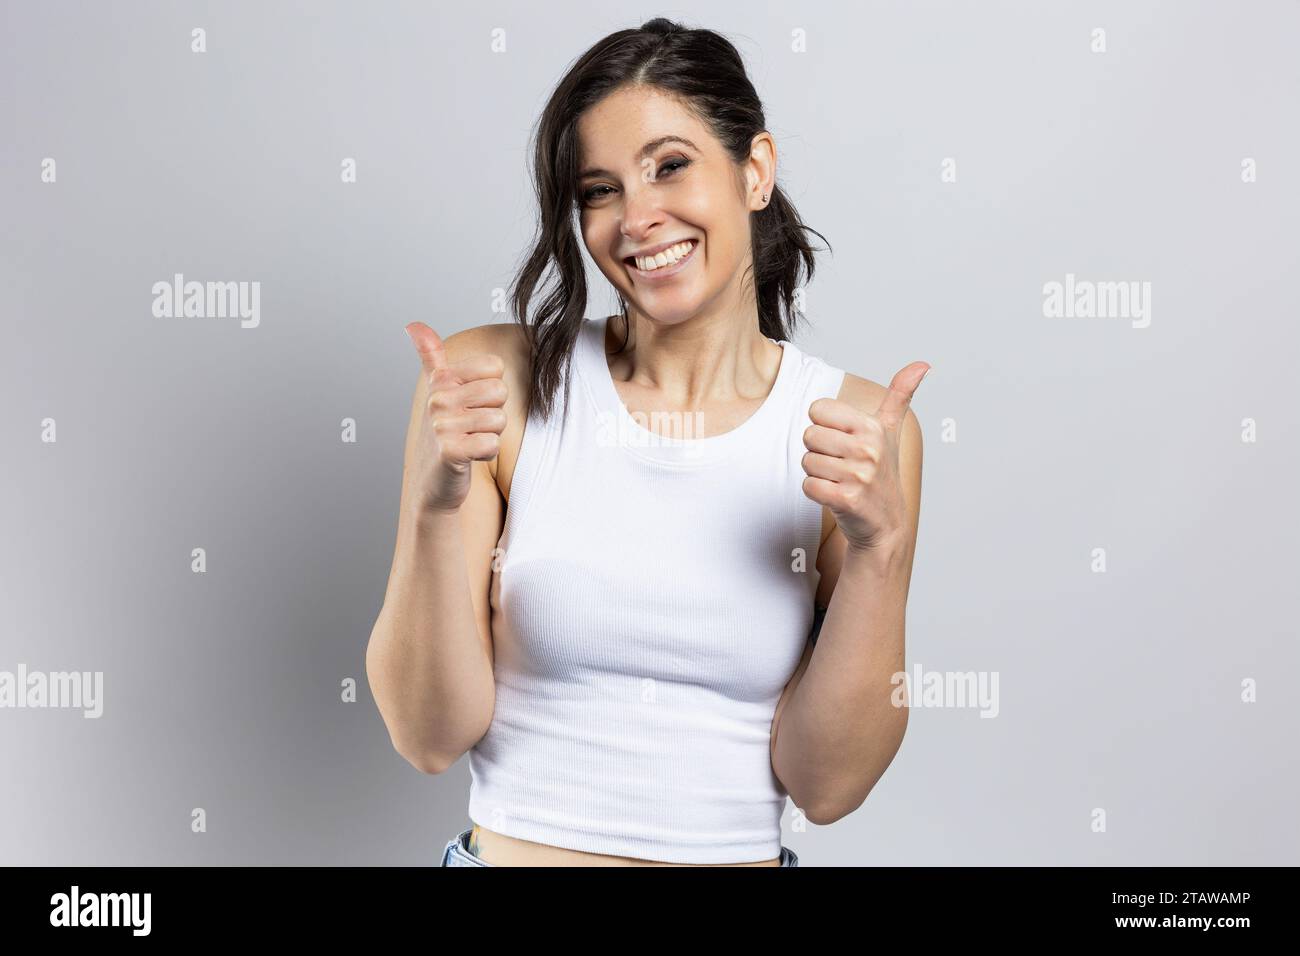 Fröhliche junge Frau macht positives Zeichen mit dem Daumen nach oben, positive Stimmung, erfolgreiche Geste, auf hellgrauem Studiohintergrund Stockfoto